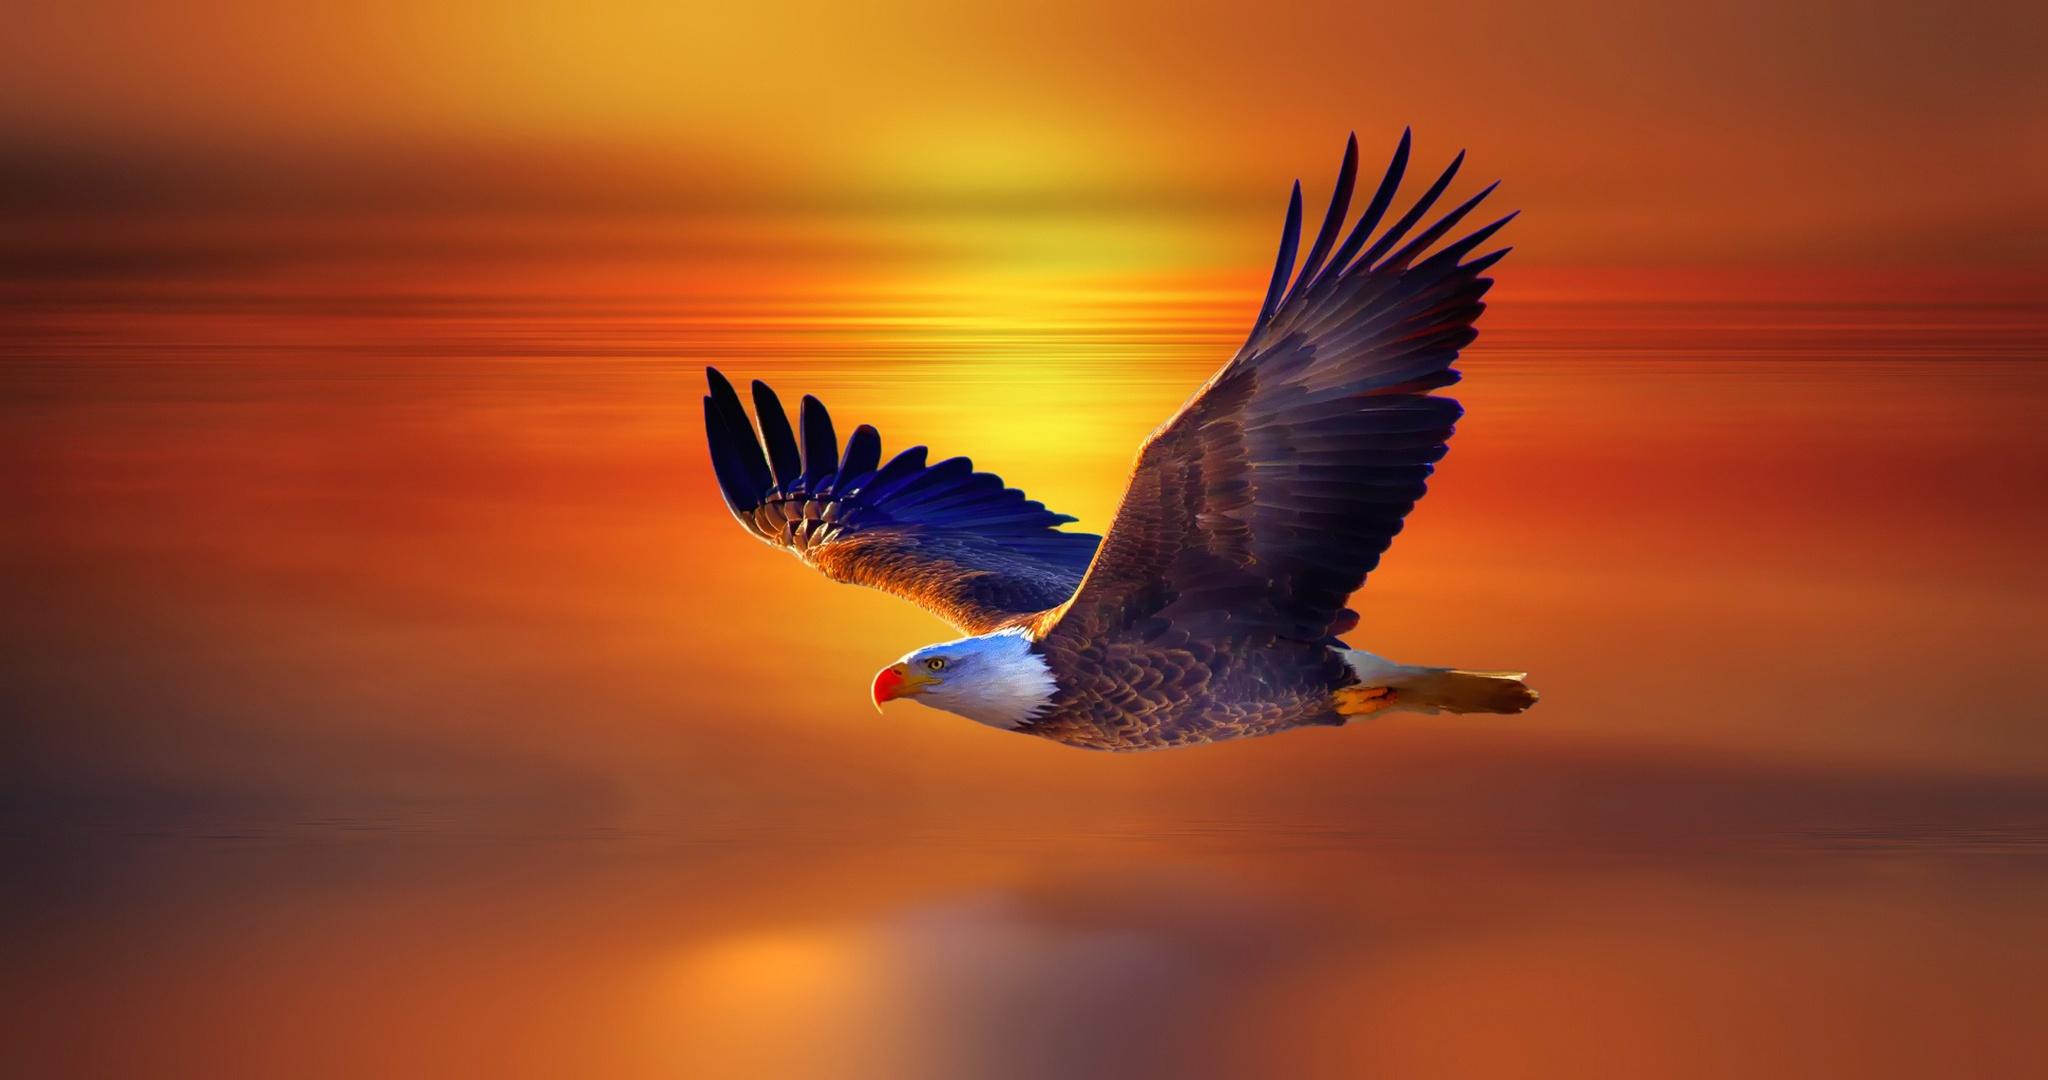 Bald Eagle, HD Birds, 4k Wallpaper, Image, Background